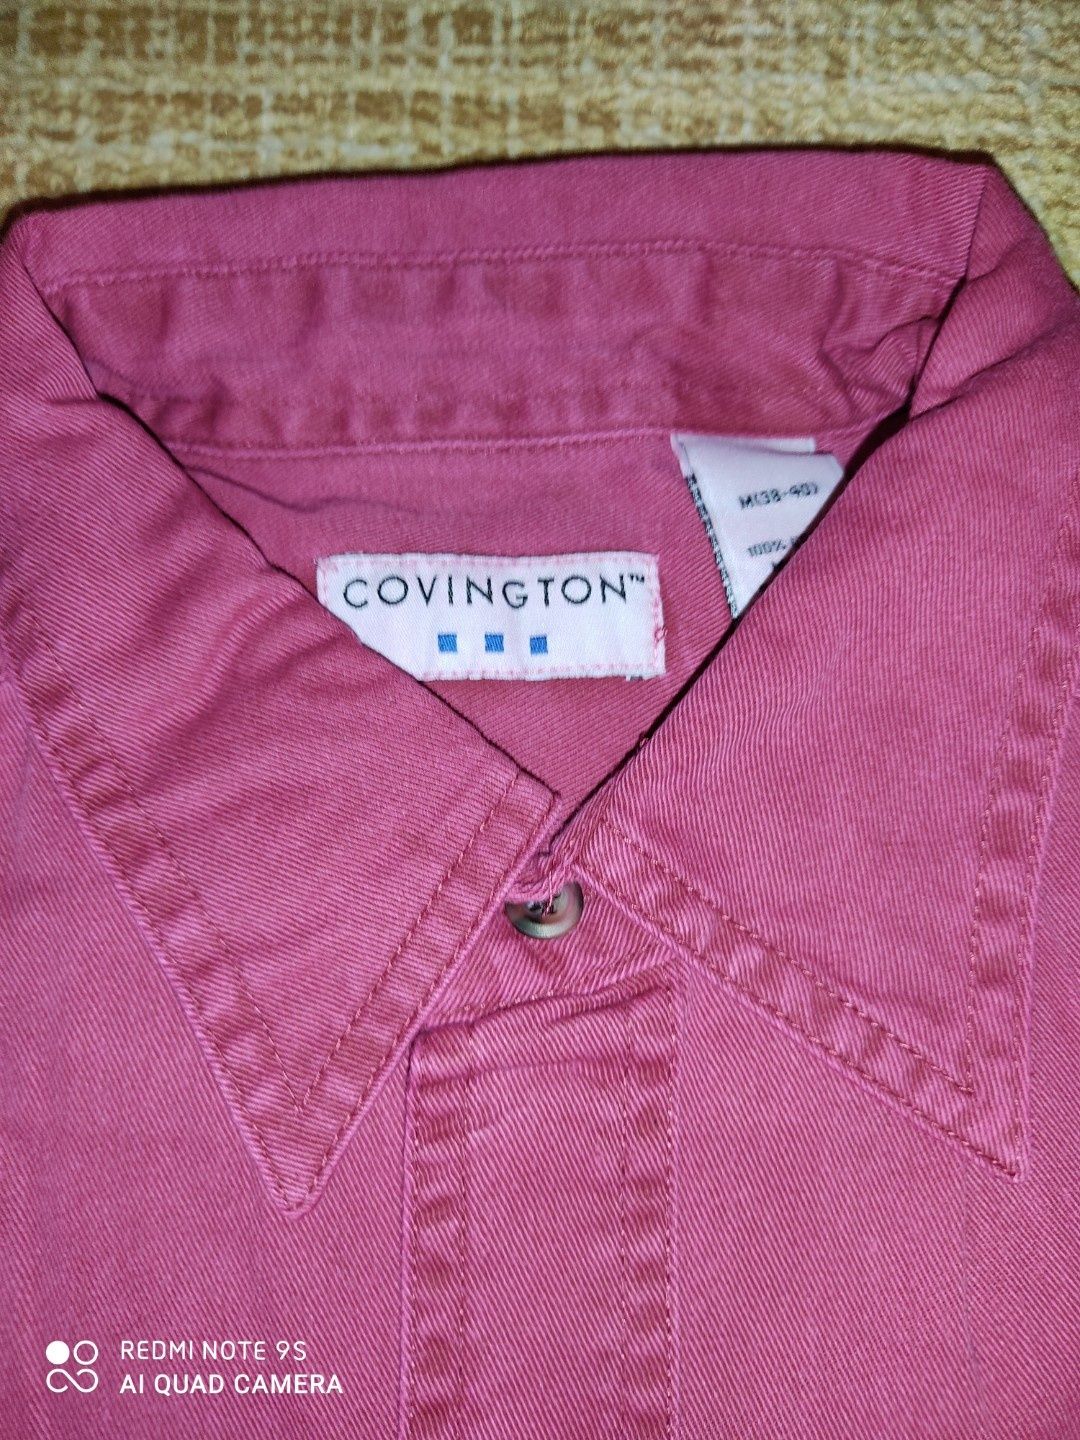 Шорты фирменные Armani (оригинал) и Красная джинсовая рубашка.